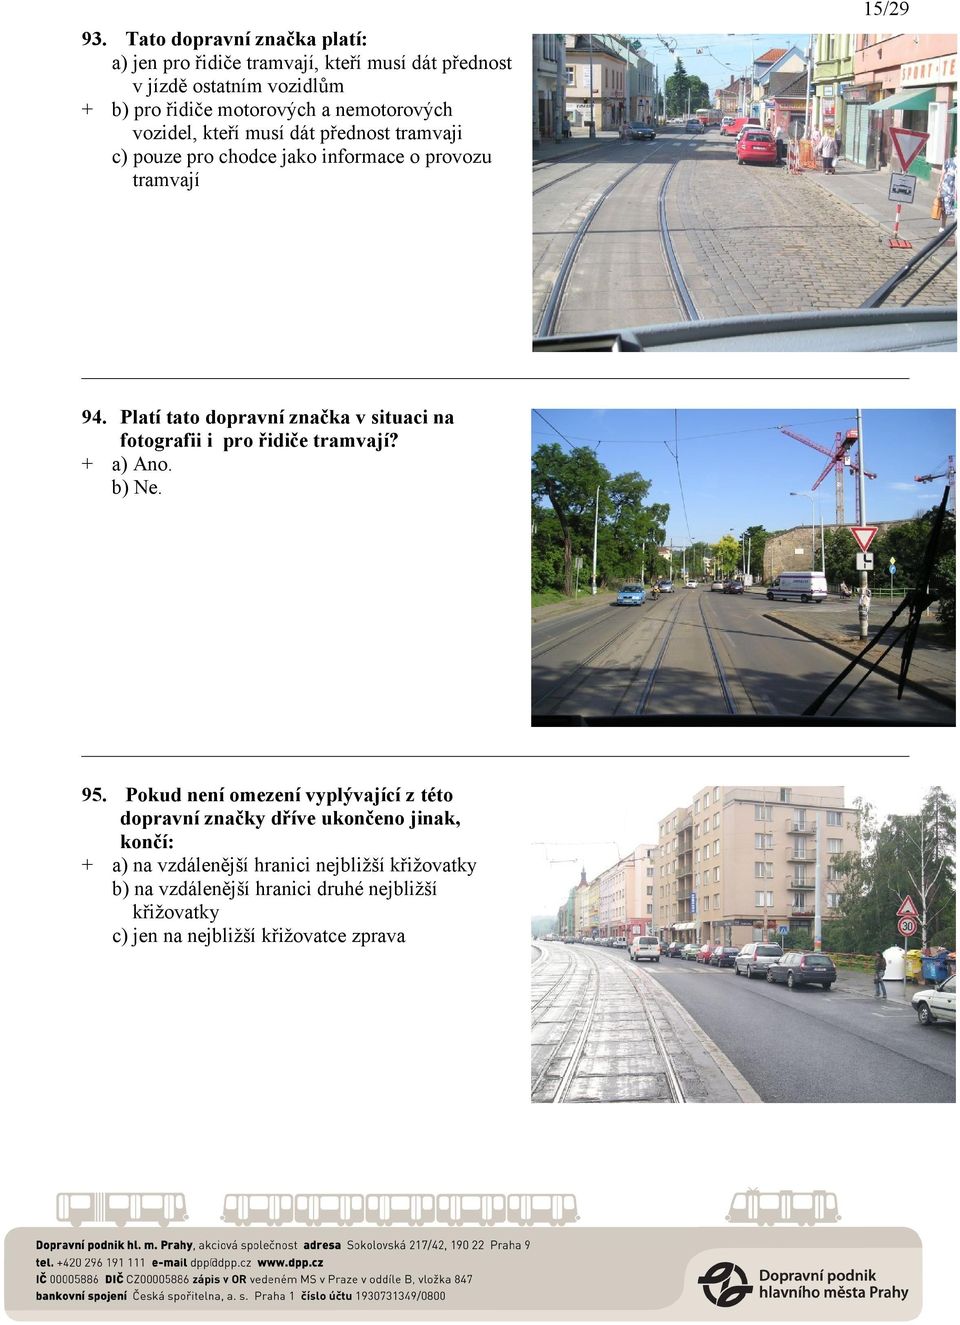 nemotorových vozidel, kteří musí dát přednost tramvaji c) pouze pro chodce jako informace o provozu tramvají 94.